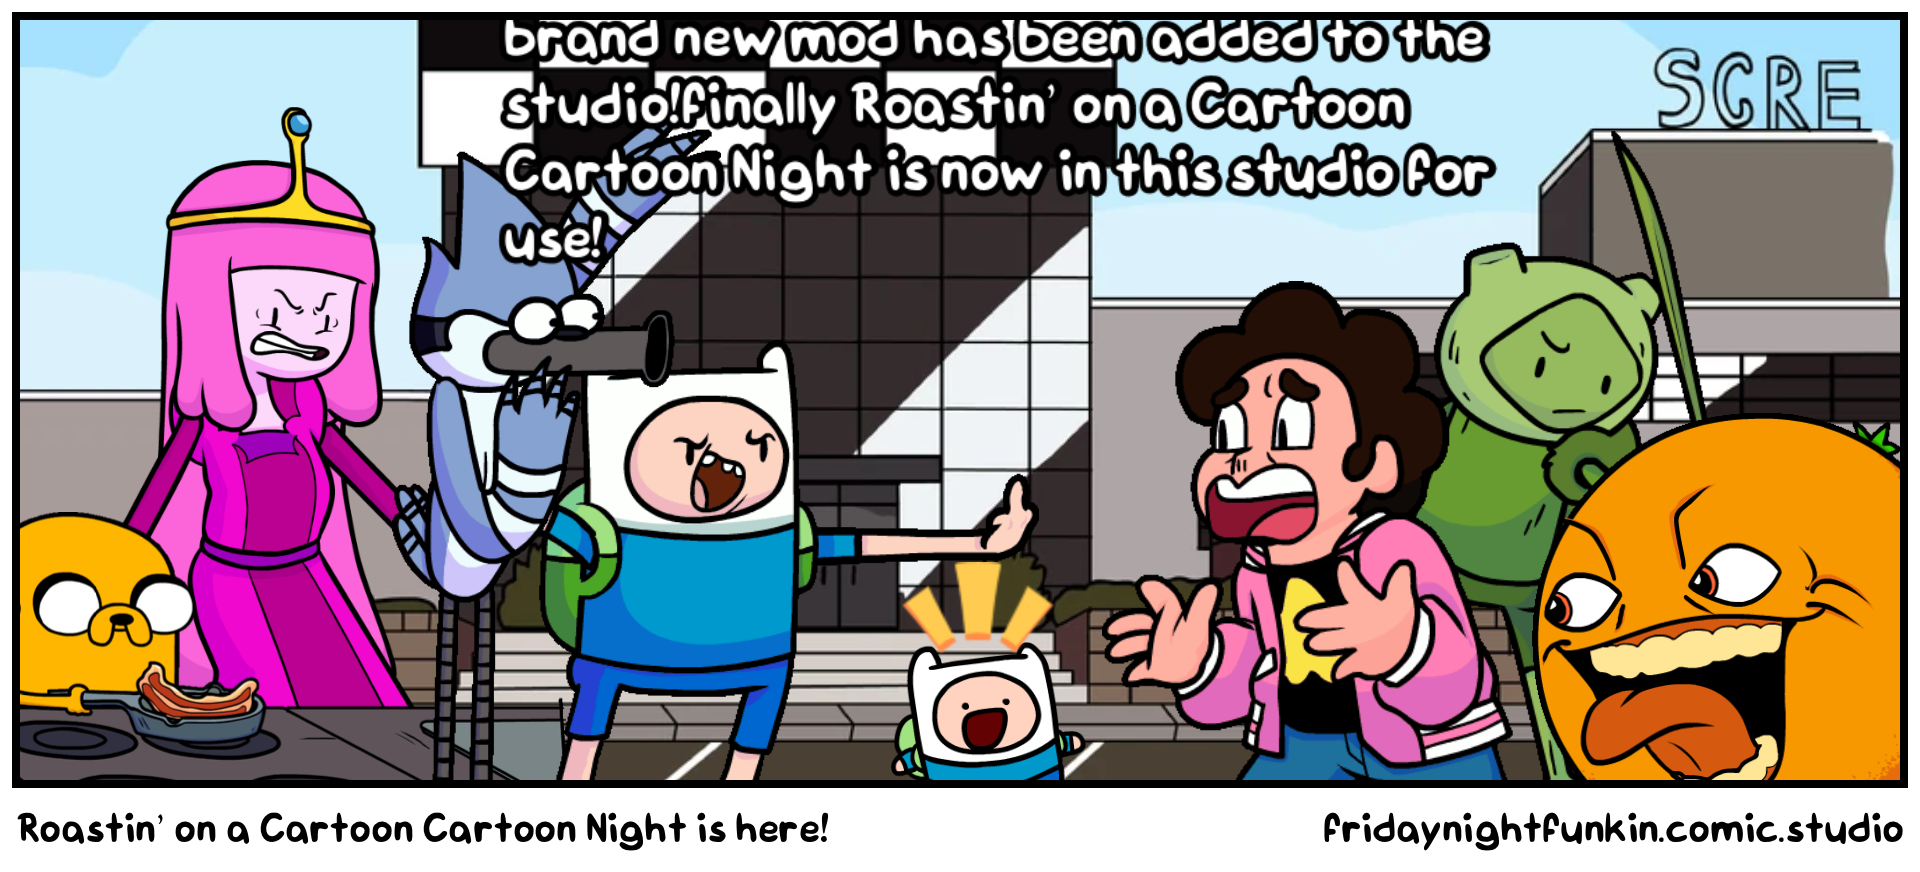 Roastin’ on a Cartoon Cartoon Night is here!